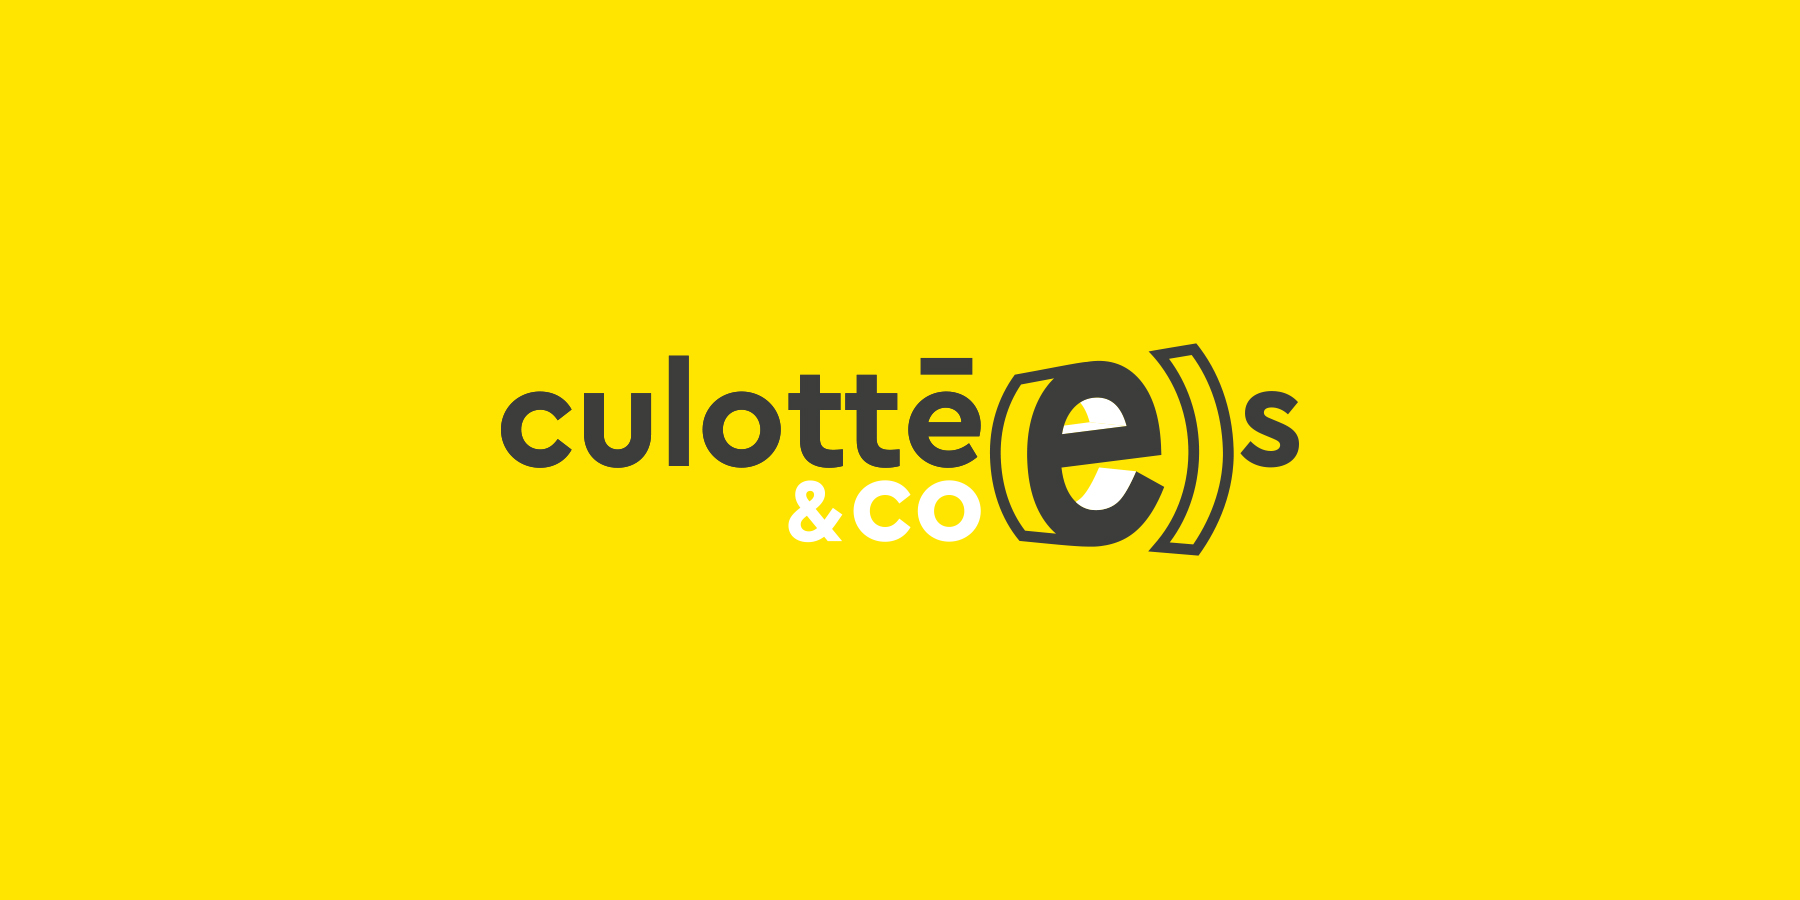 Culottees_01